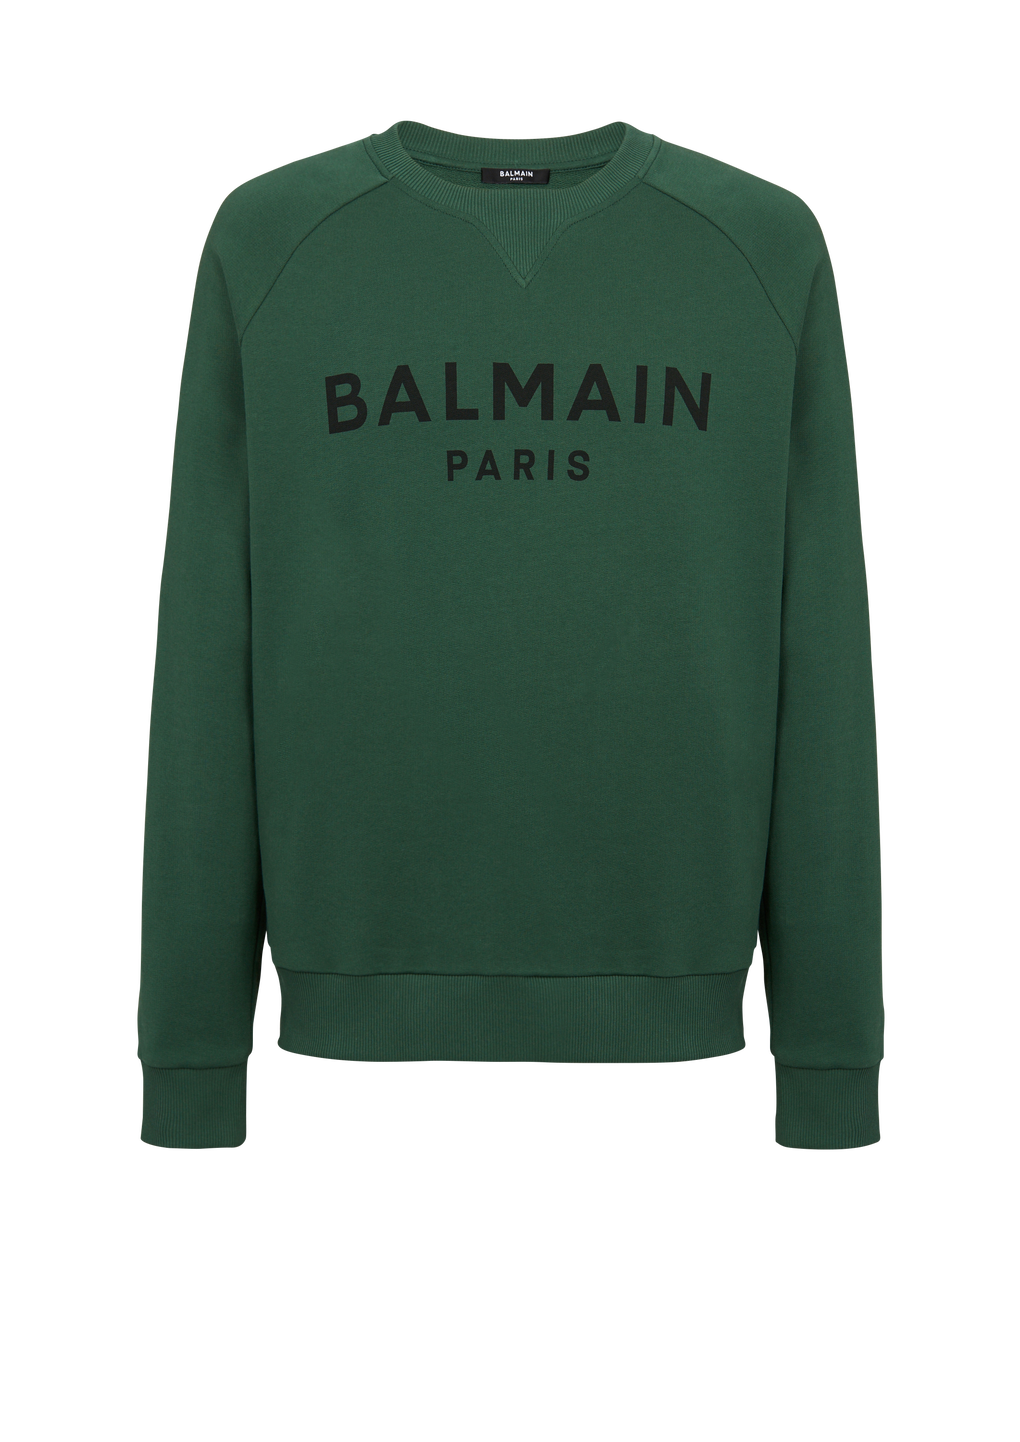 コットン スウェットシャツ ブラックBalmain Parisロゴプリント, 緑, hi-res